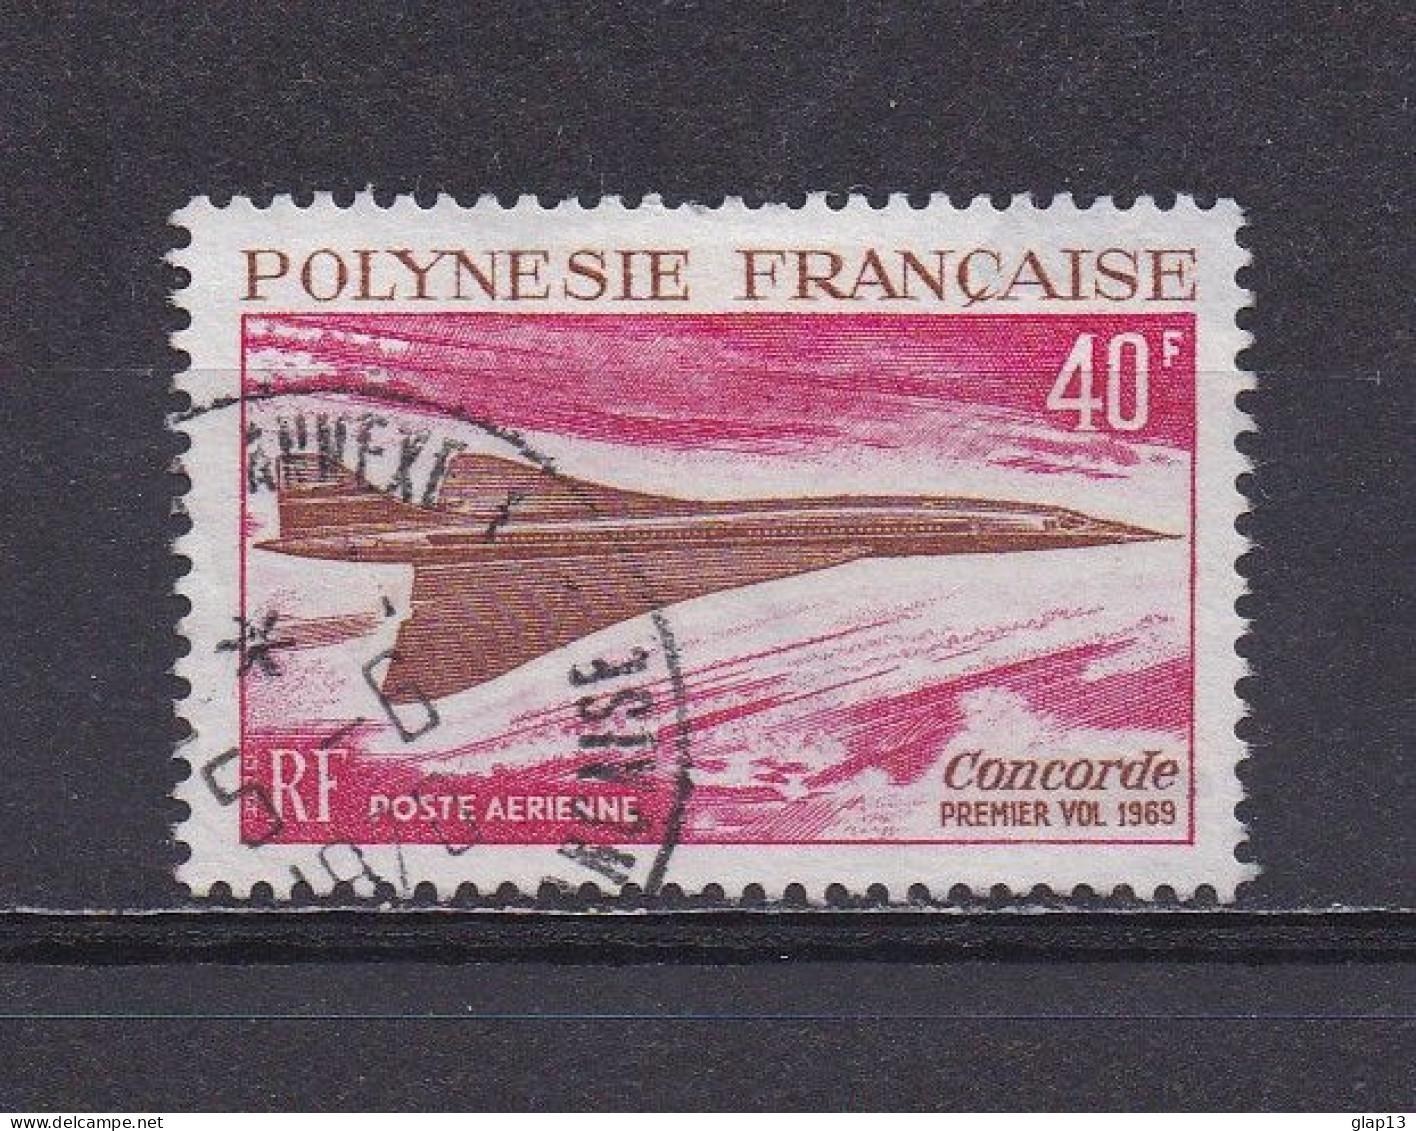 POLYNESIE FRANCAISE 1969 PA N°27 OBLITERE CONCORDE - Gebruikt